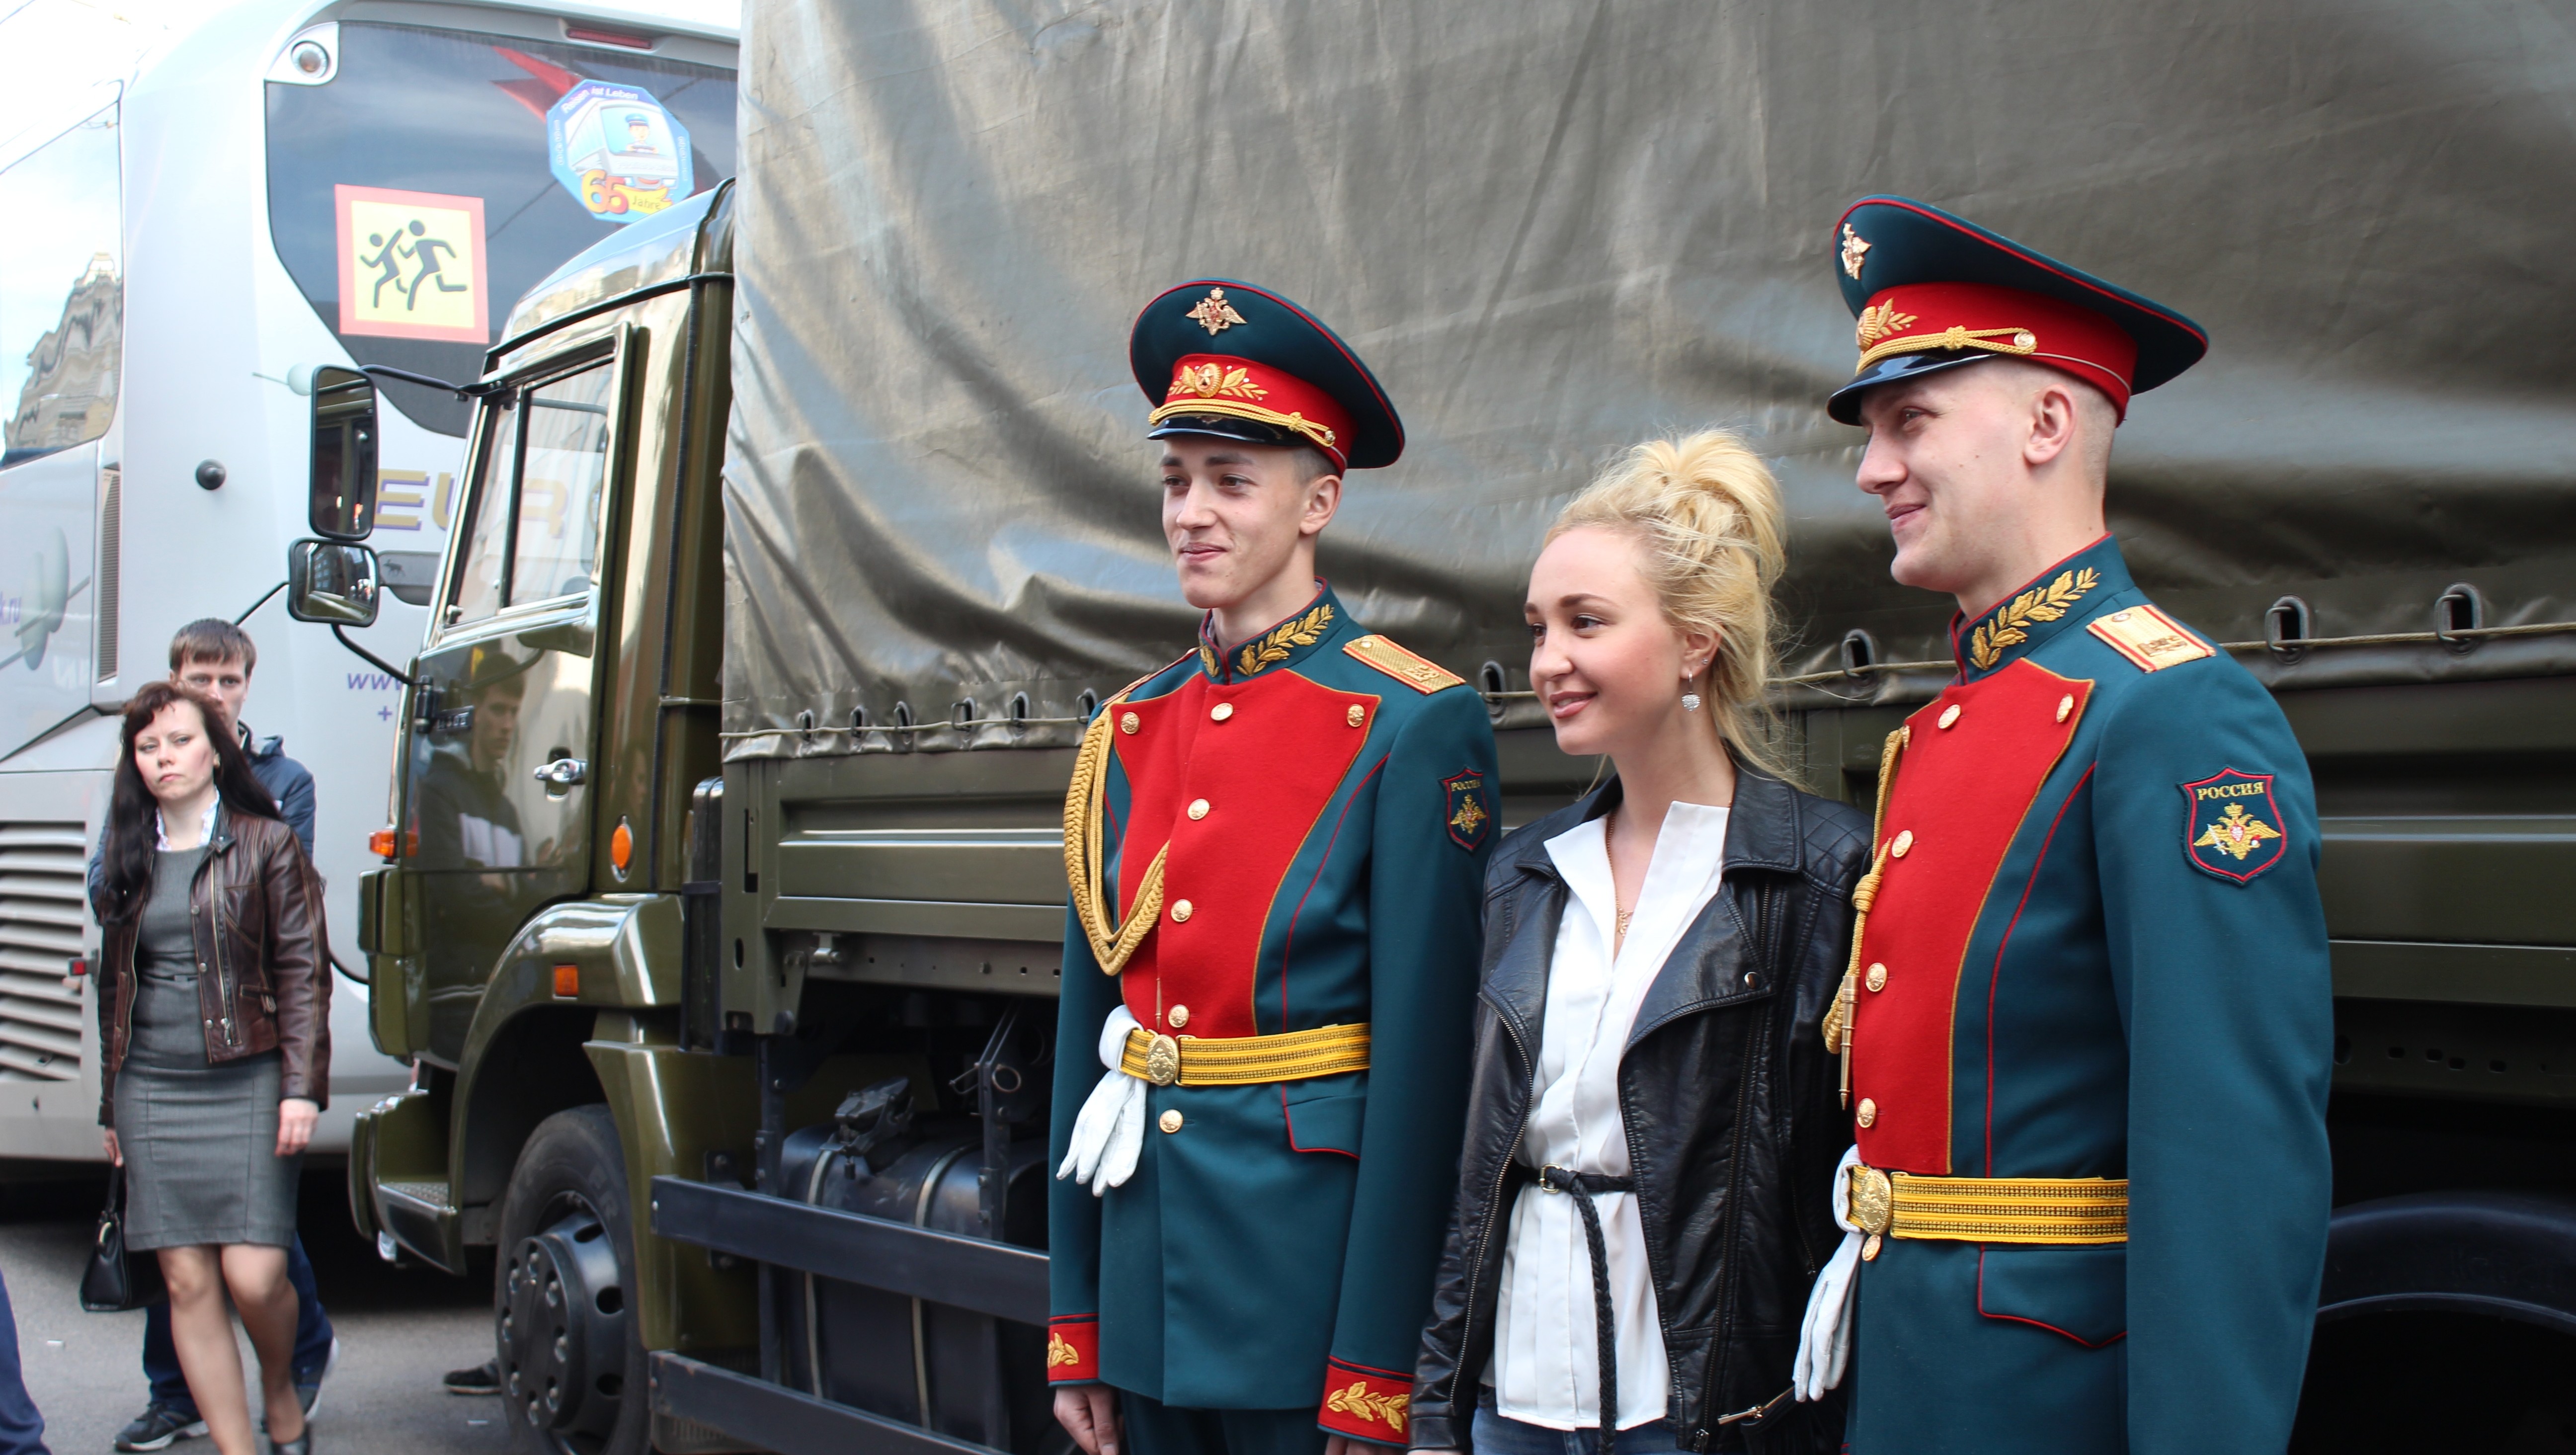  Rusos toman las calles de Moscú para celebrar los 70 años del fin de la II Guerra Mundial